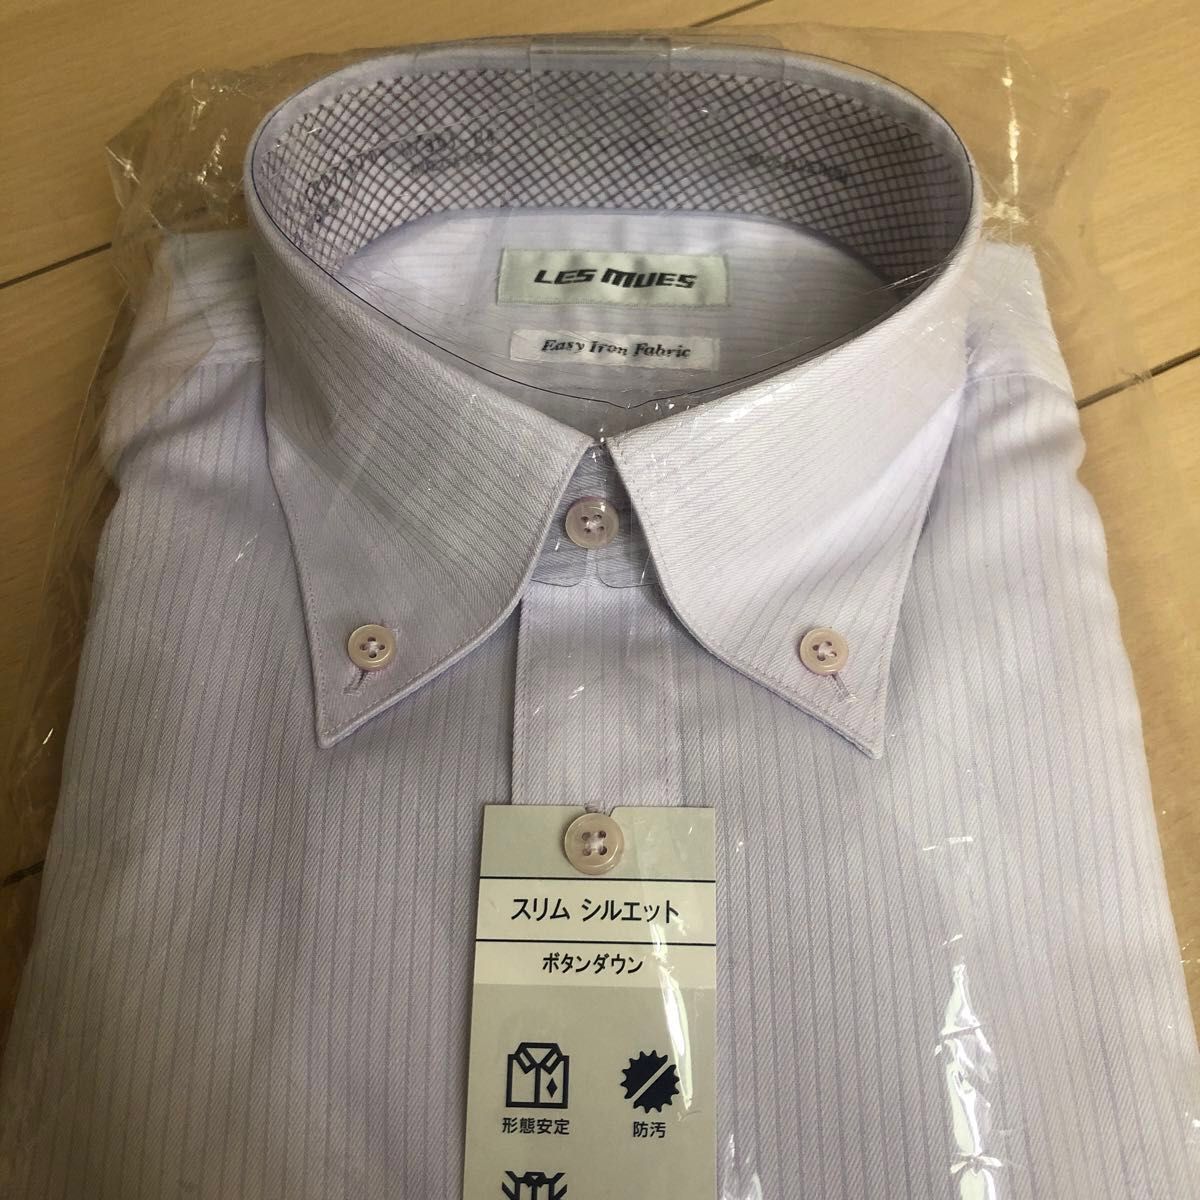 【未開封 未使用】AOKI アオキ ワイシャツ 形態安定 LES MUES 39-84 Mサイズ 防汚 ボタンダウン 長袖 スリム